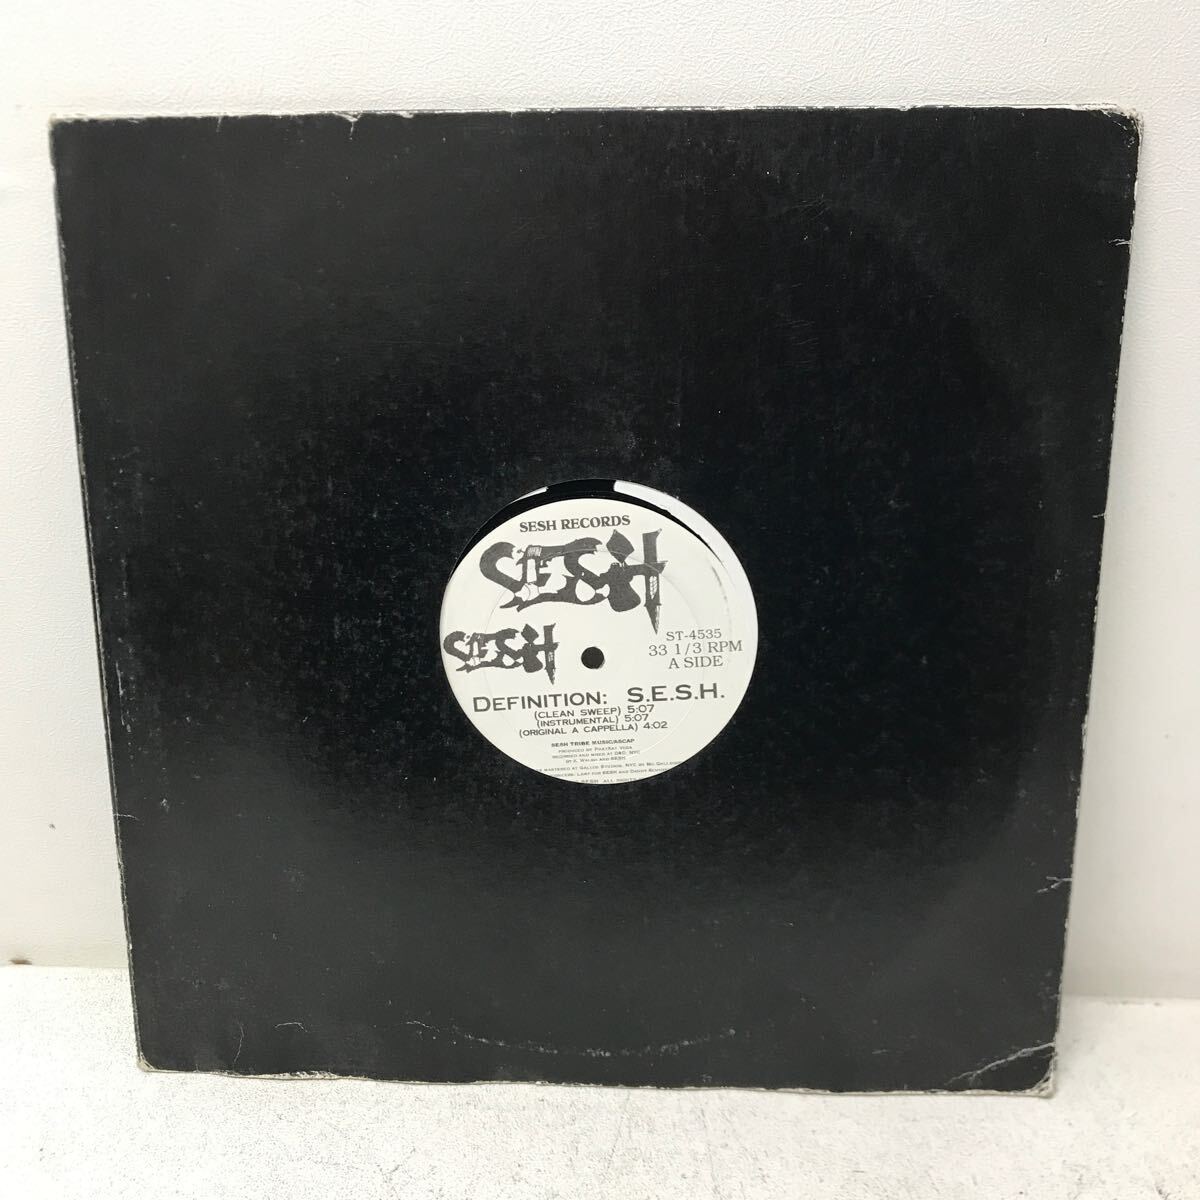 I0418A3 Sesh Definition: S.E.S.H LP レコード ST-4535 音楽 洋楽 HIP-HOP ヒップホップ / CLEAN SWEEP / INSTRUMENTAL 他の画像1